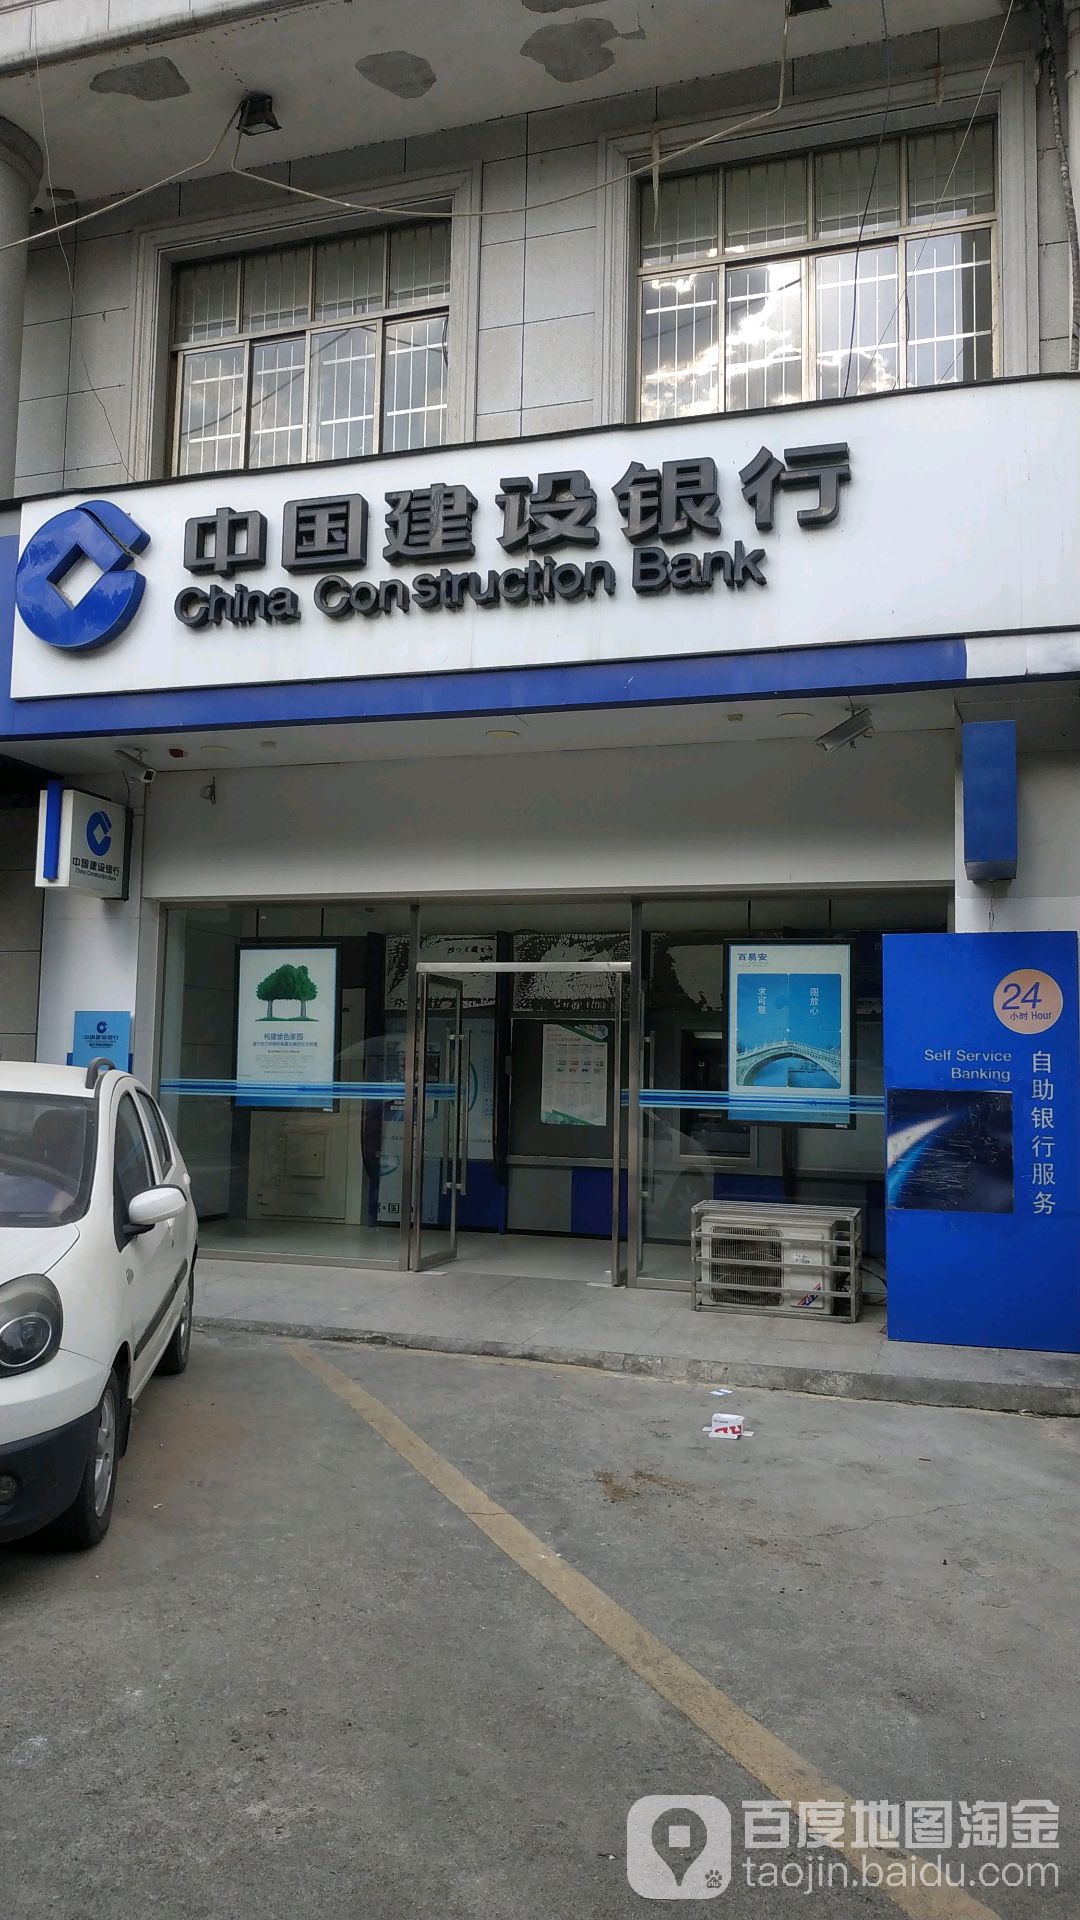 中国建设银行24小时自助银行